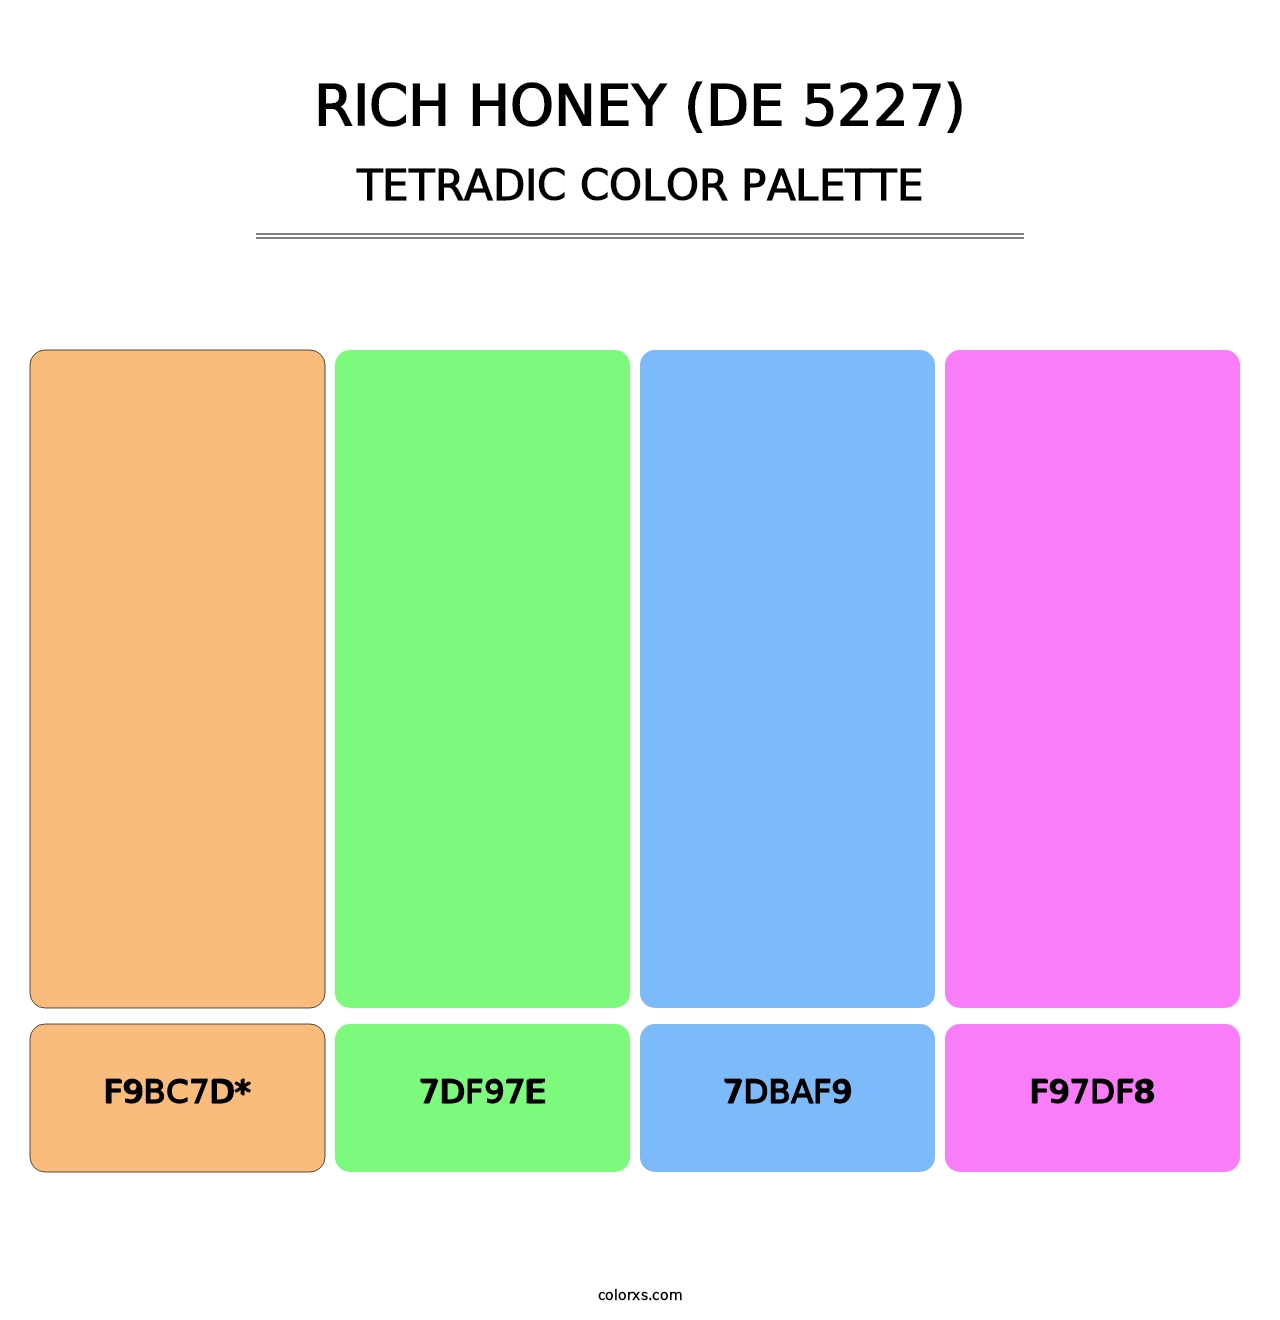 Rich Honey (DE 5227) - Tetradic Color Palette